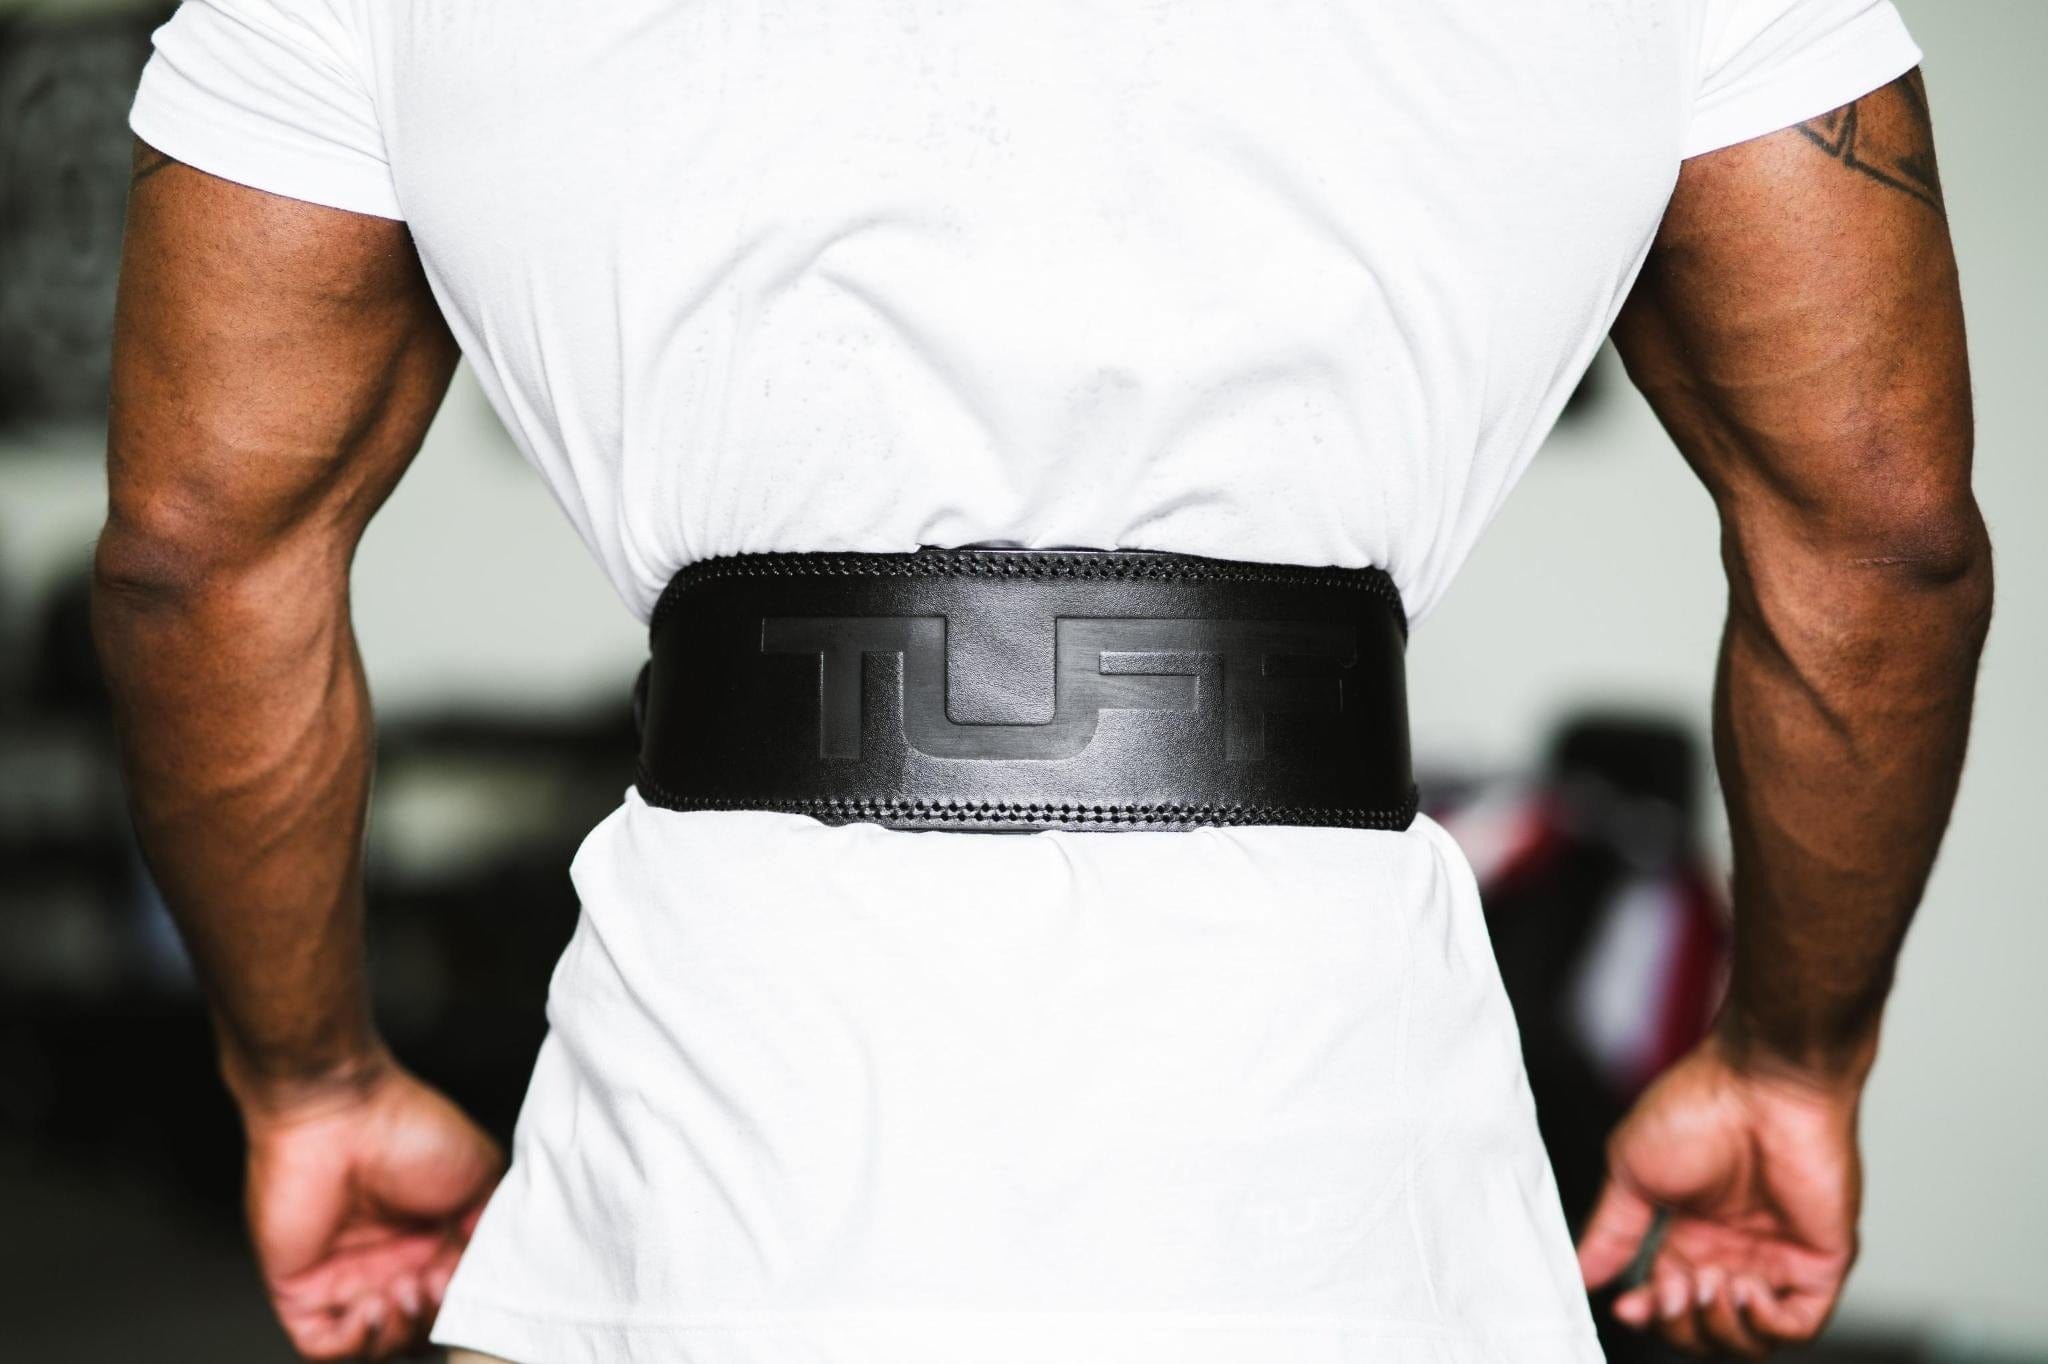  Weight Lifting Belt for men Weightlifting belt